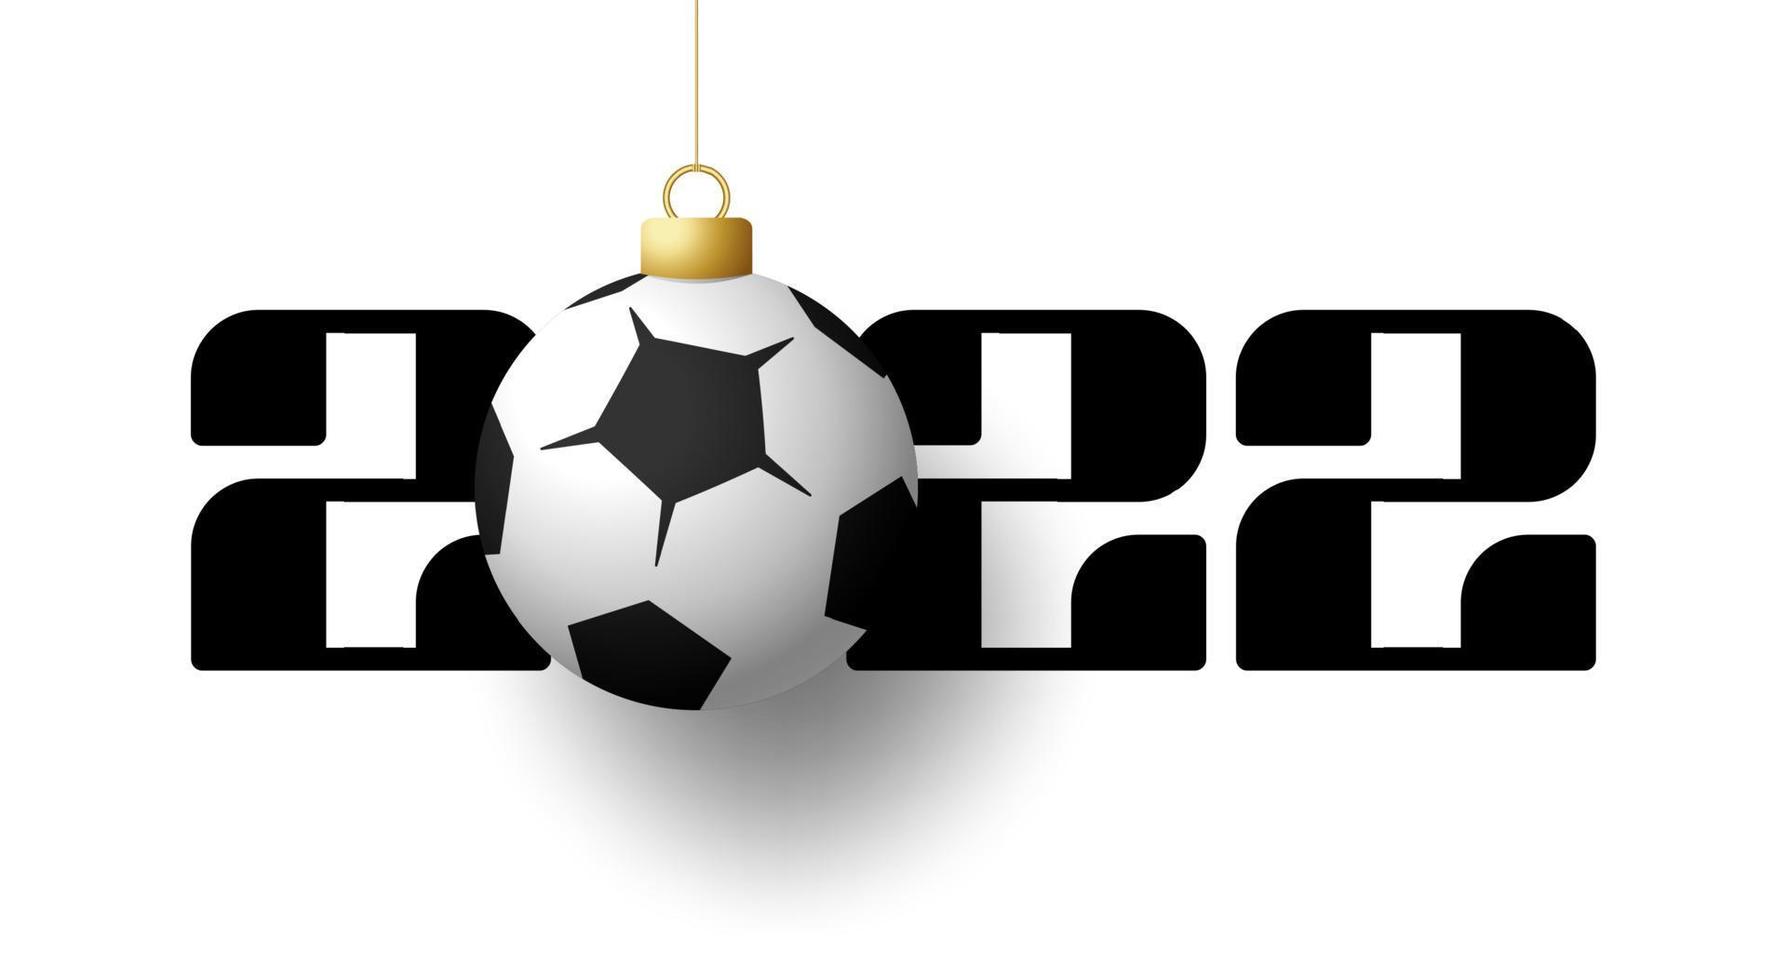 2022 feliz año nuevo. Tarjeta de felicitación deportiva con balón de fútbol y fútbol dorado en el fondo de lujo. ilustración vectorial. vector